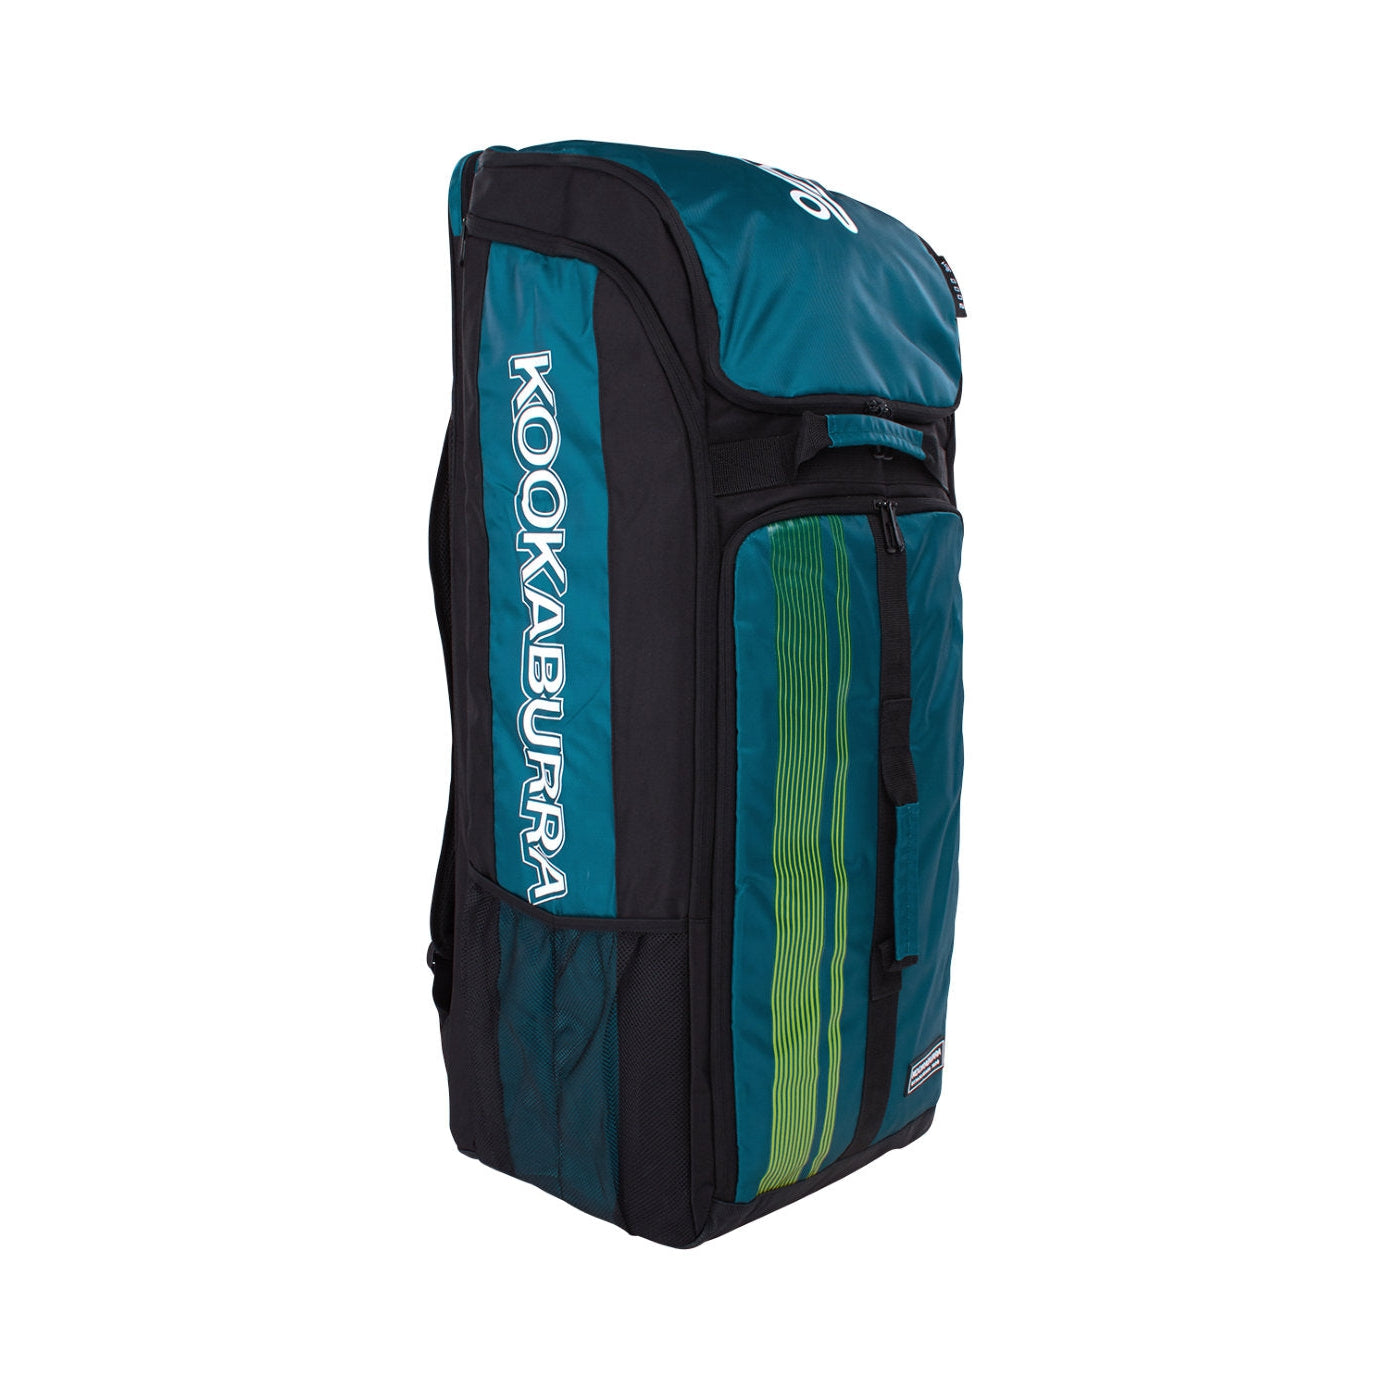 Kookaburra Cricket Bag Pro D2000 Duffle Green/Black